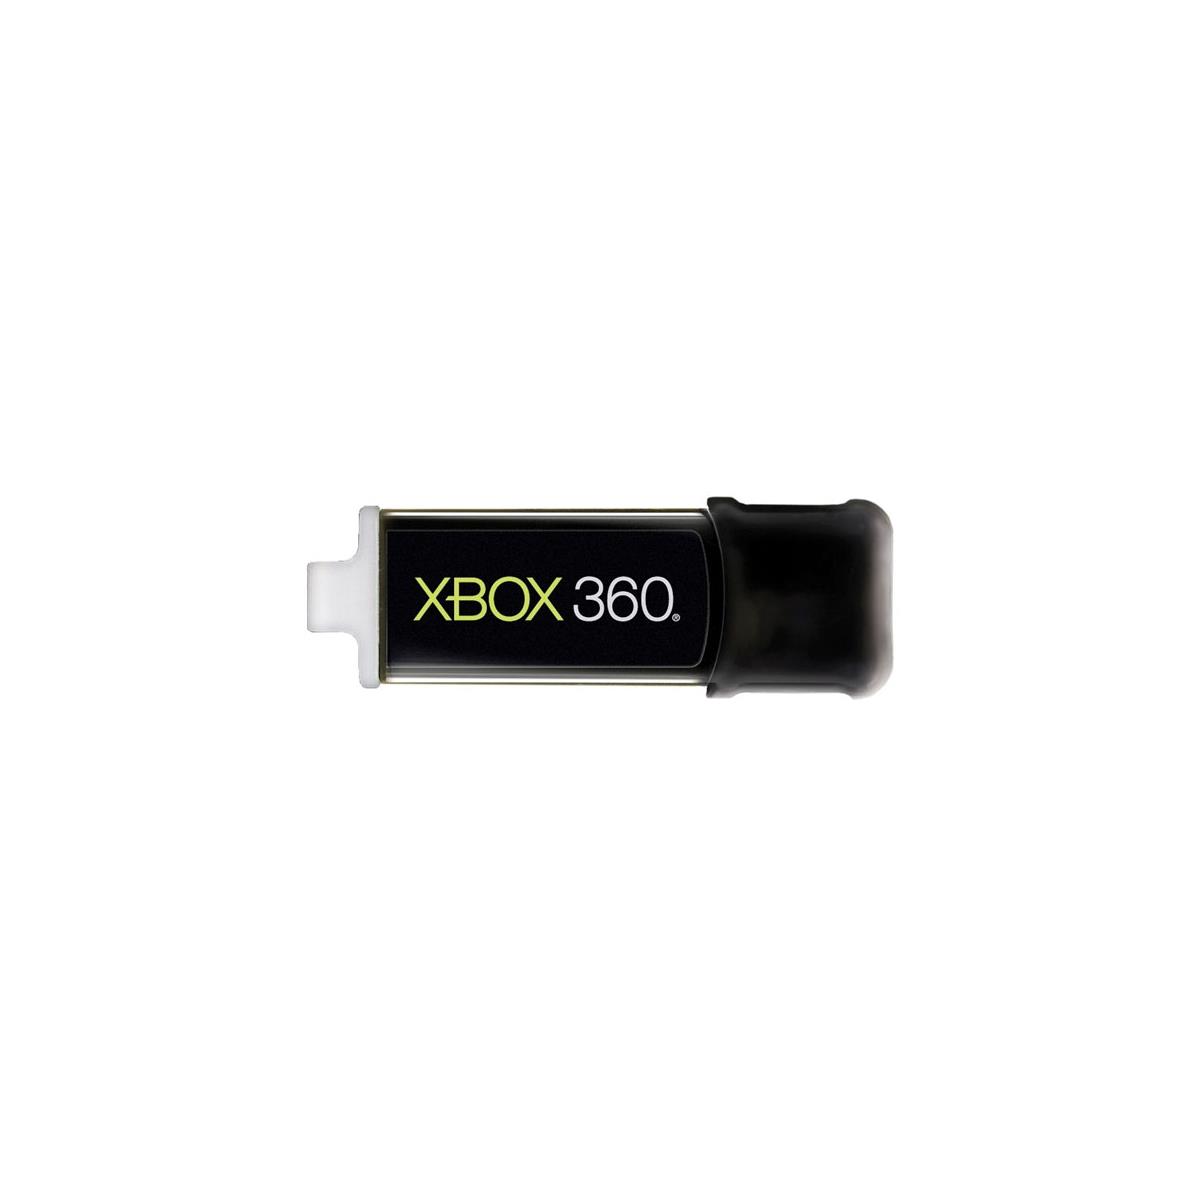 Флешка SANDISK Xbox 360 8gb. Флешка SANDISK Xbox 360 16gb. Xbox flash